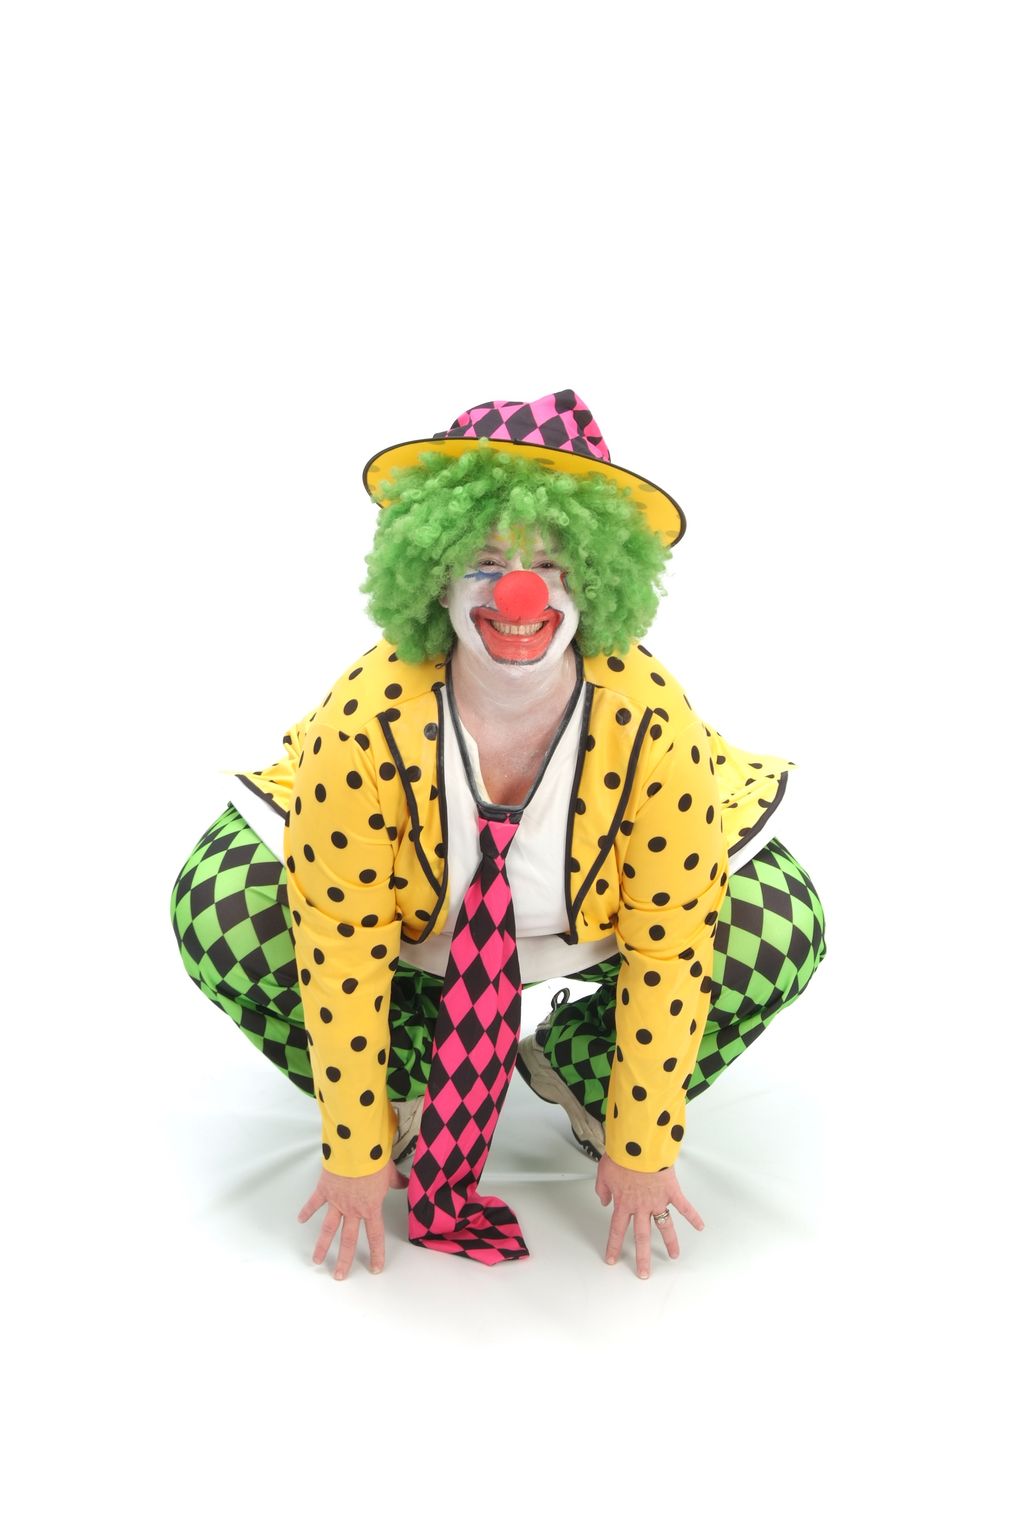 Dootsiedum The Clown